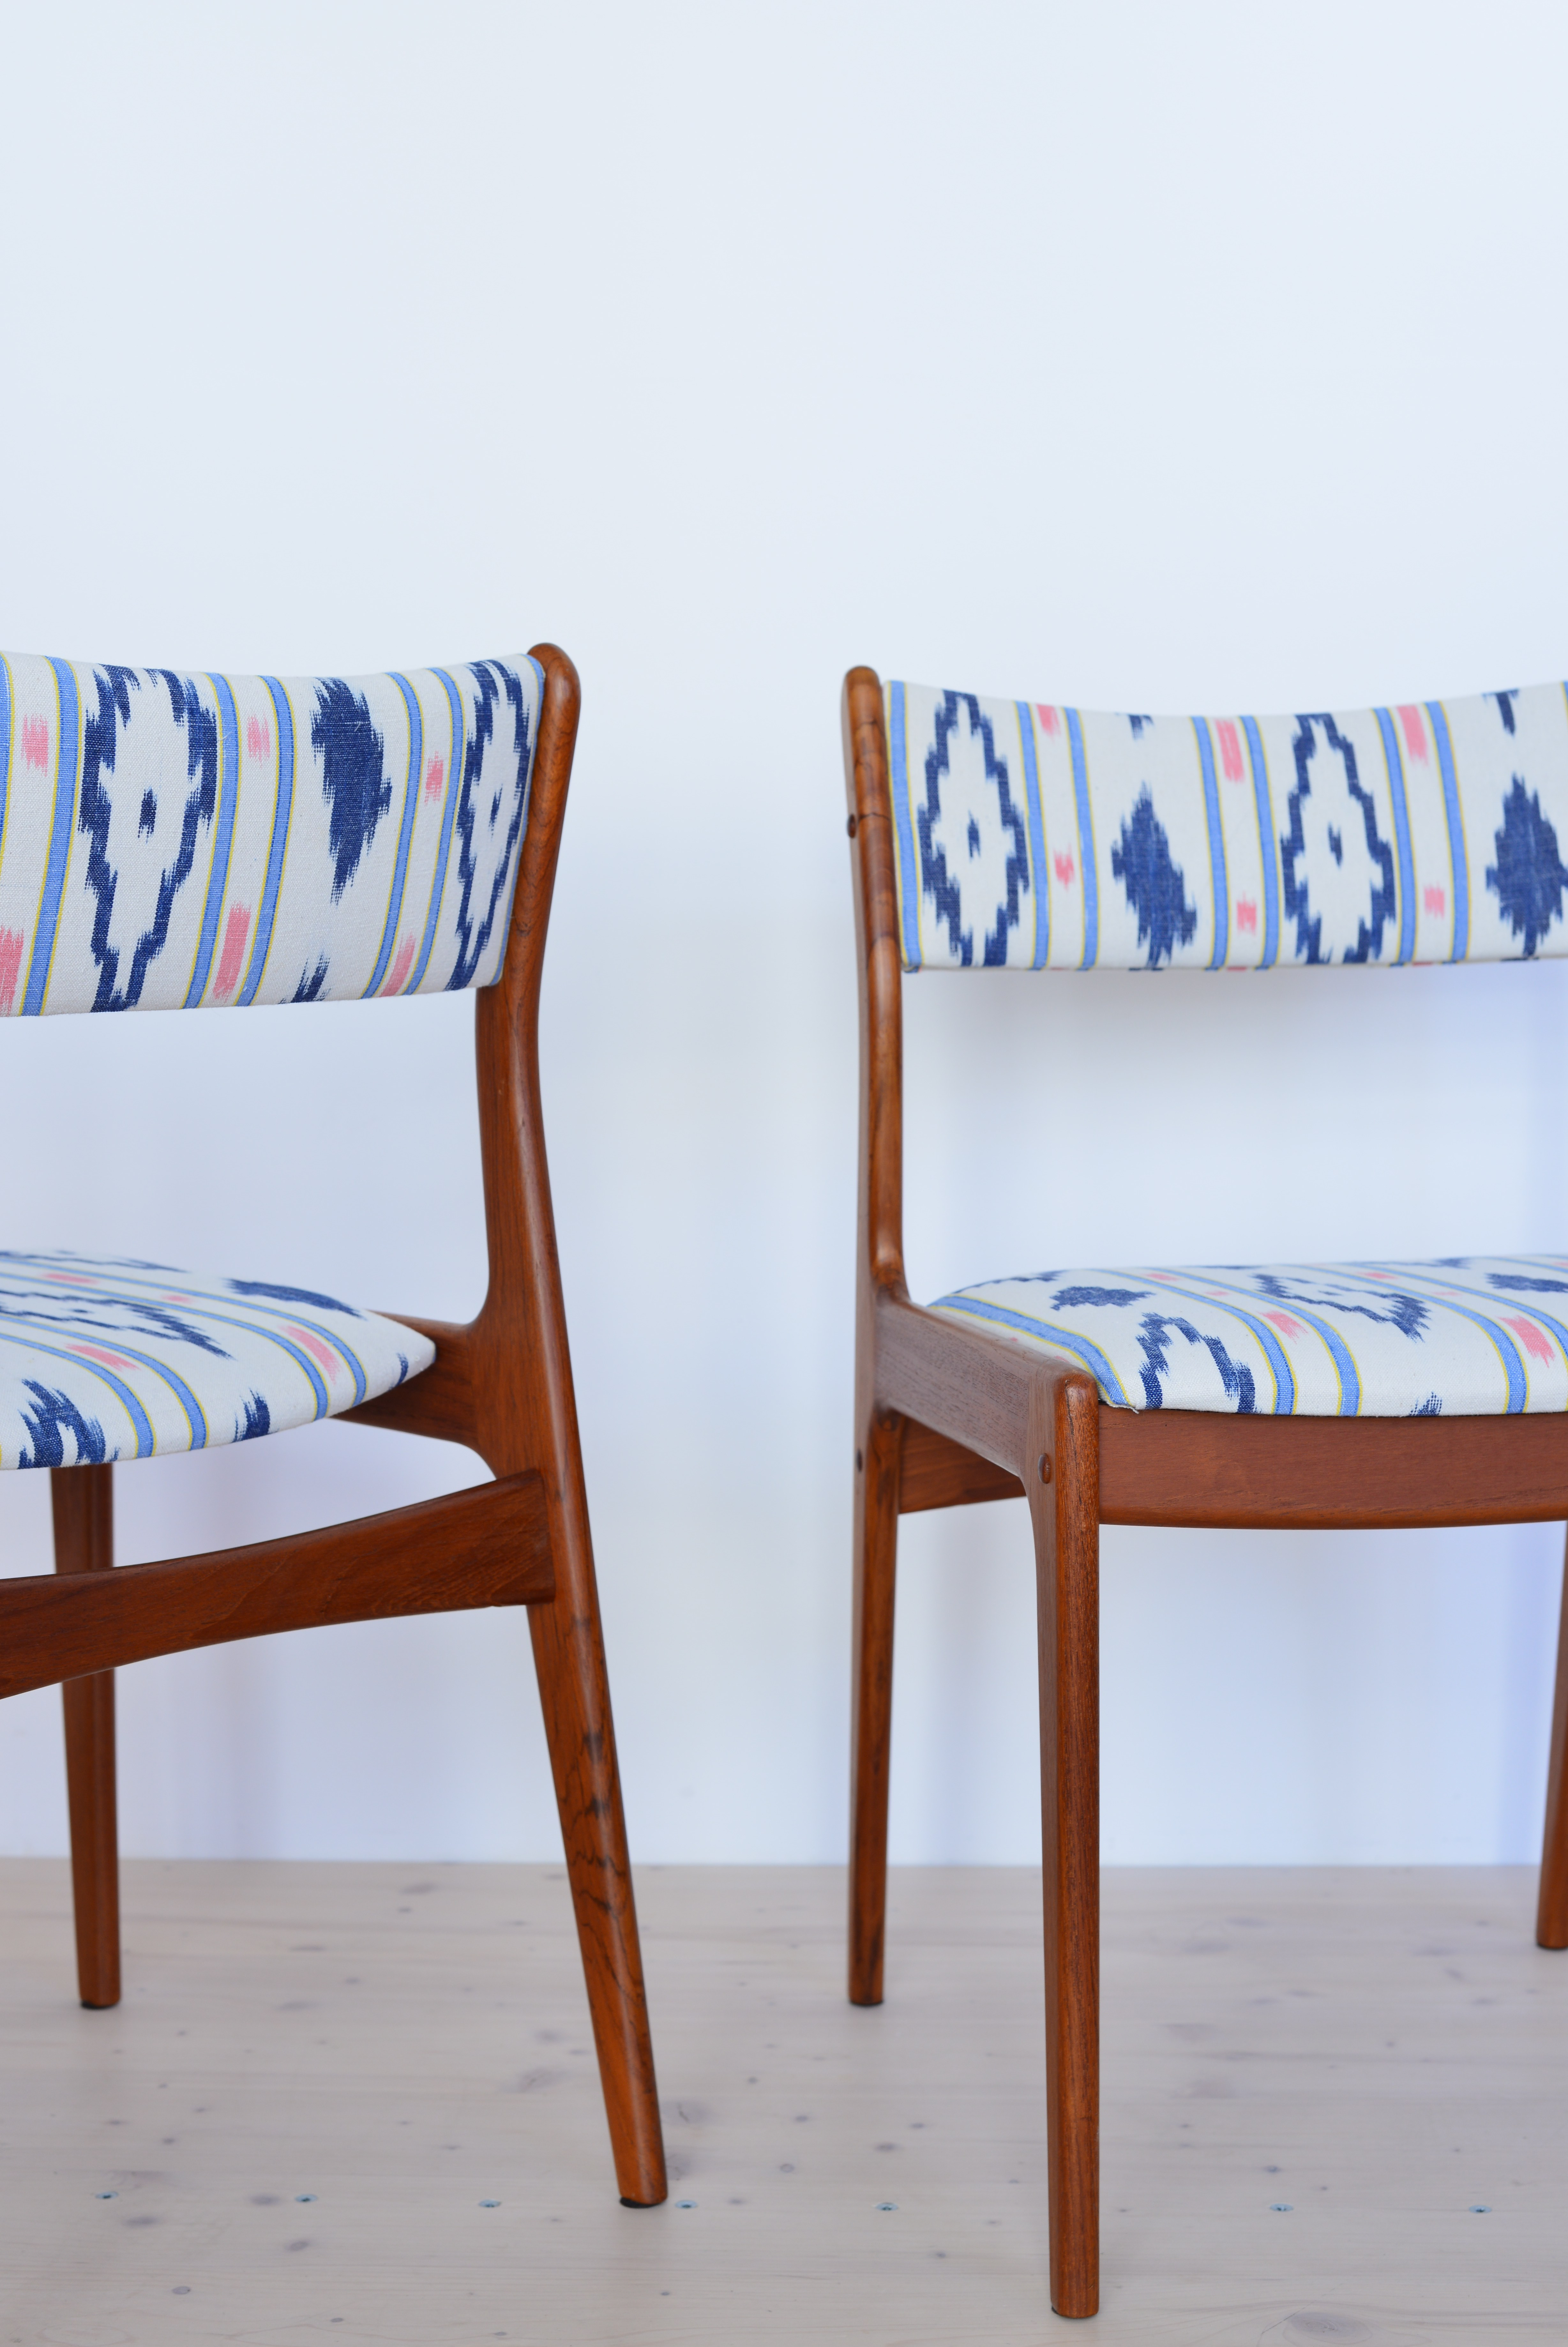 Pair of Teak Dining Chairs Reupholstered heyday möbel Zürich Switzerland